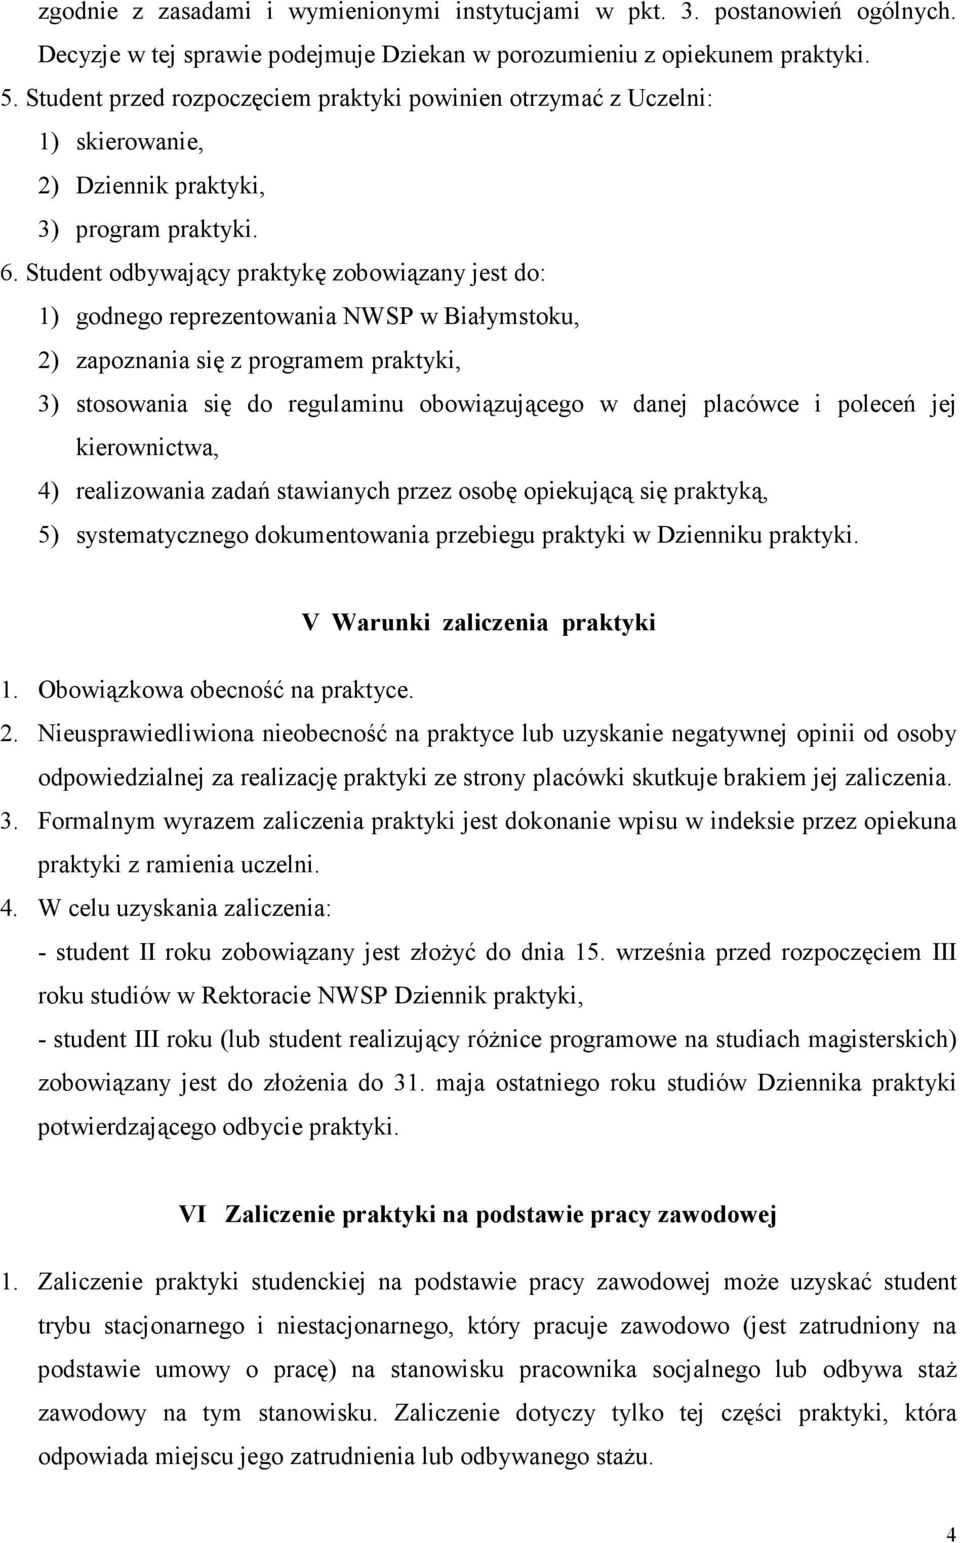 Student odbywający praktykę zobowiązany jest do: 1) godnego reprezentowania NWSP w Białymstoku, 2) zapoznania się z programem praktyki, 3) stosowania się do regulaminu obowiązującego w danej placówce